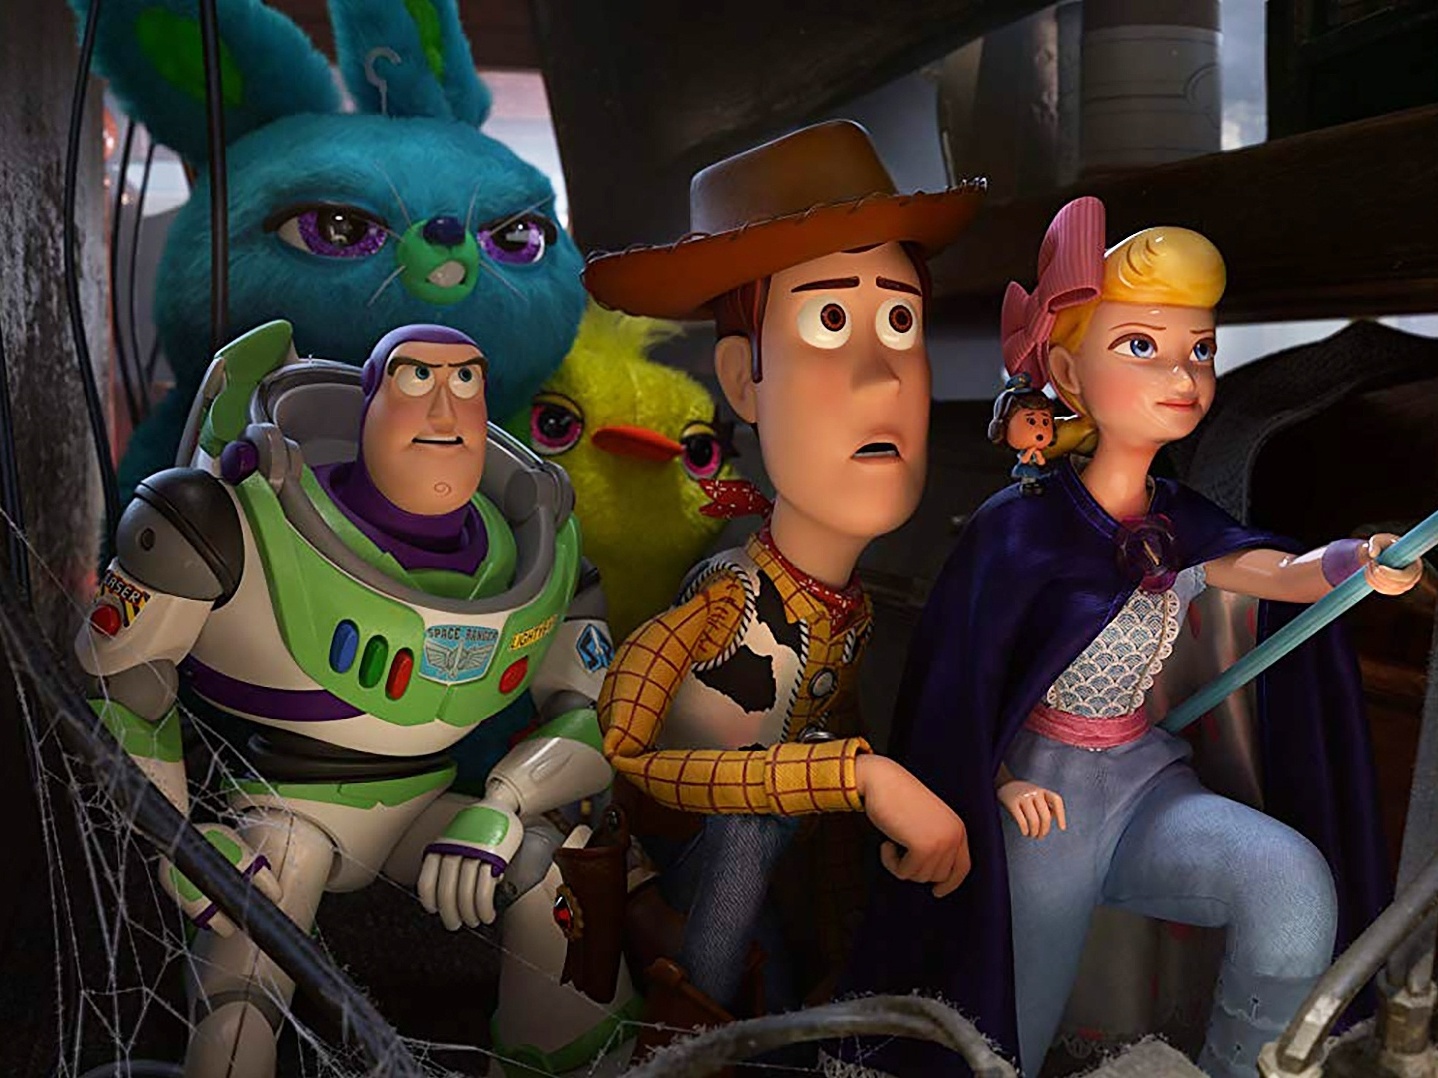 Os conjuntos Toy Story da Disney Pixar estão correndo para a cidade.. Os  meninos poderão colecionar todos os personagens principais da filme Toy  Stor - Carrefour